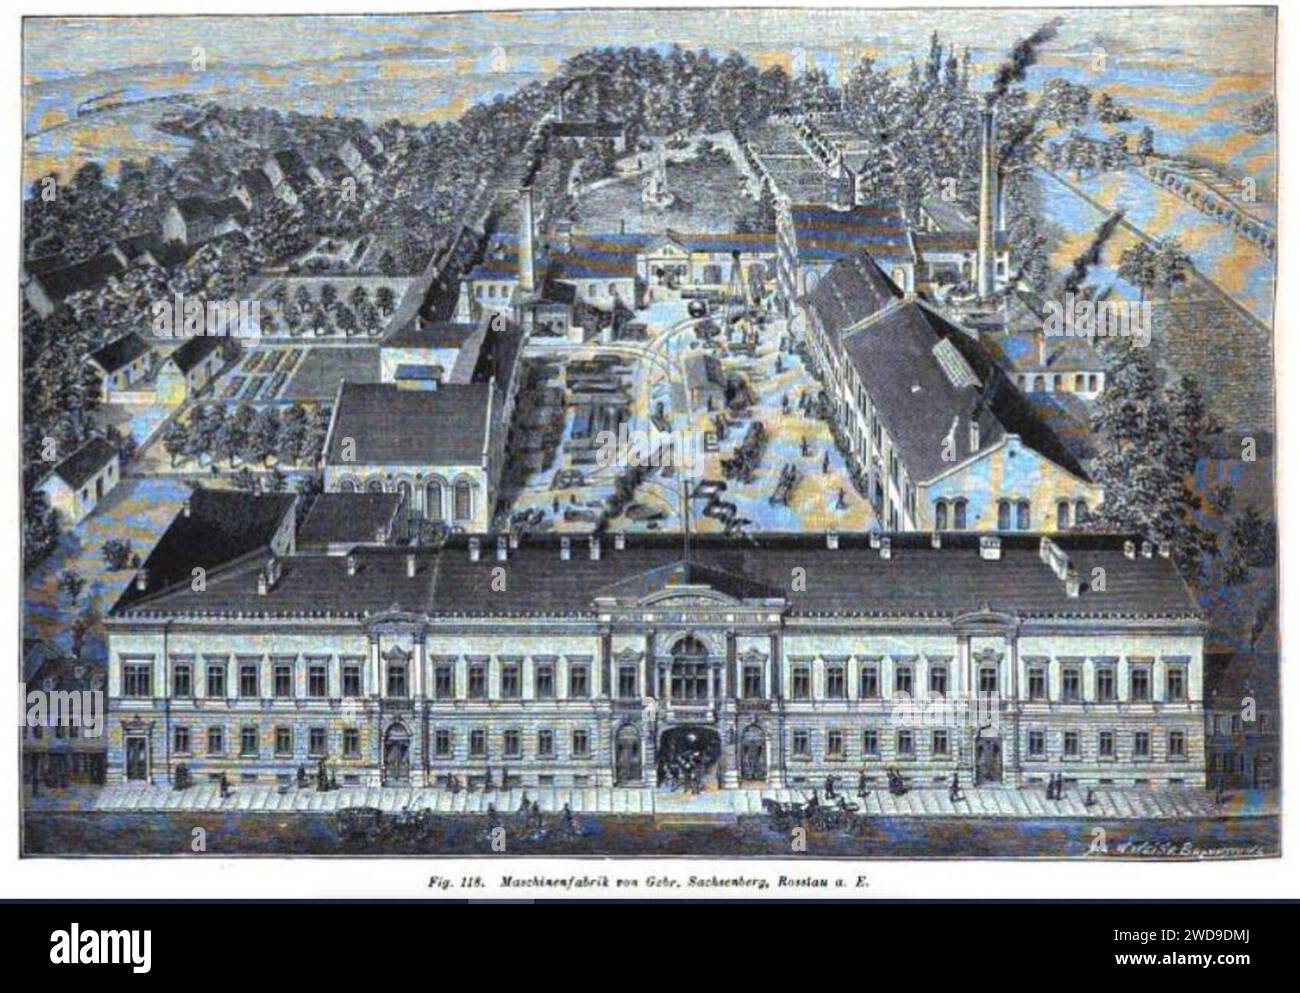 1889 circa W. Weise X. A. Braunschweig Xylographie Maschinenfabrik von Gebr. Sachsenberg, Rosslau a.E. Stock Photo